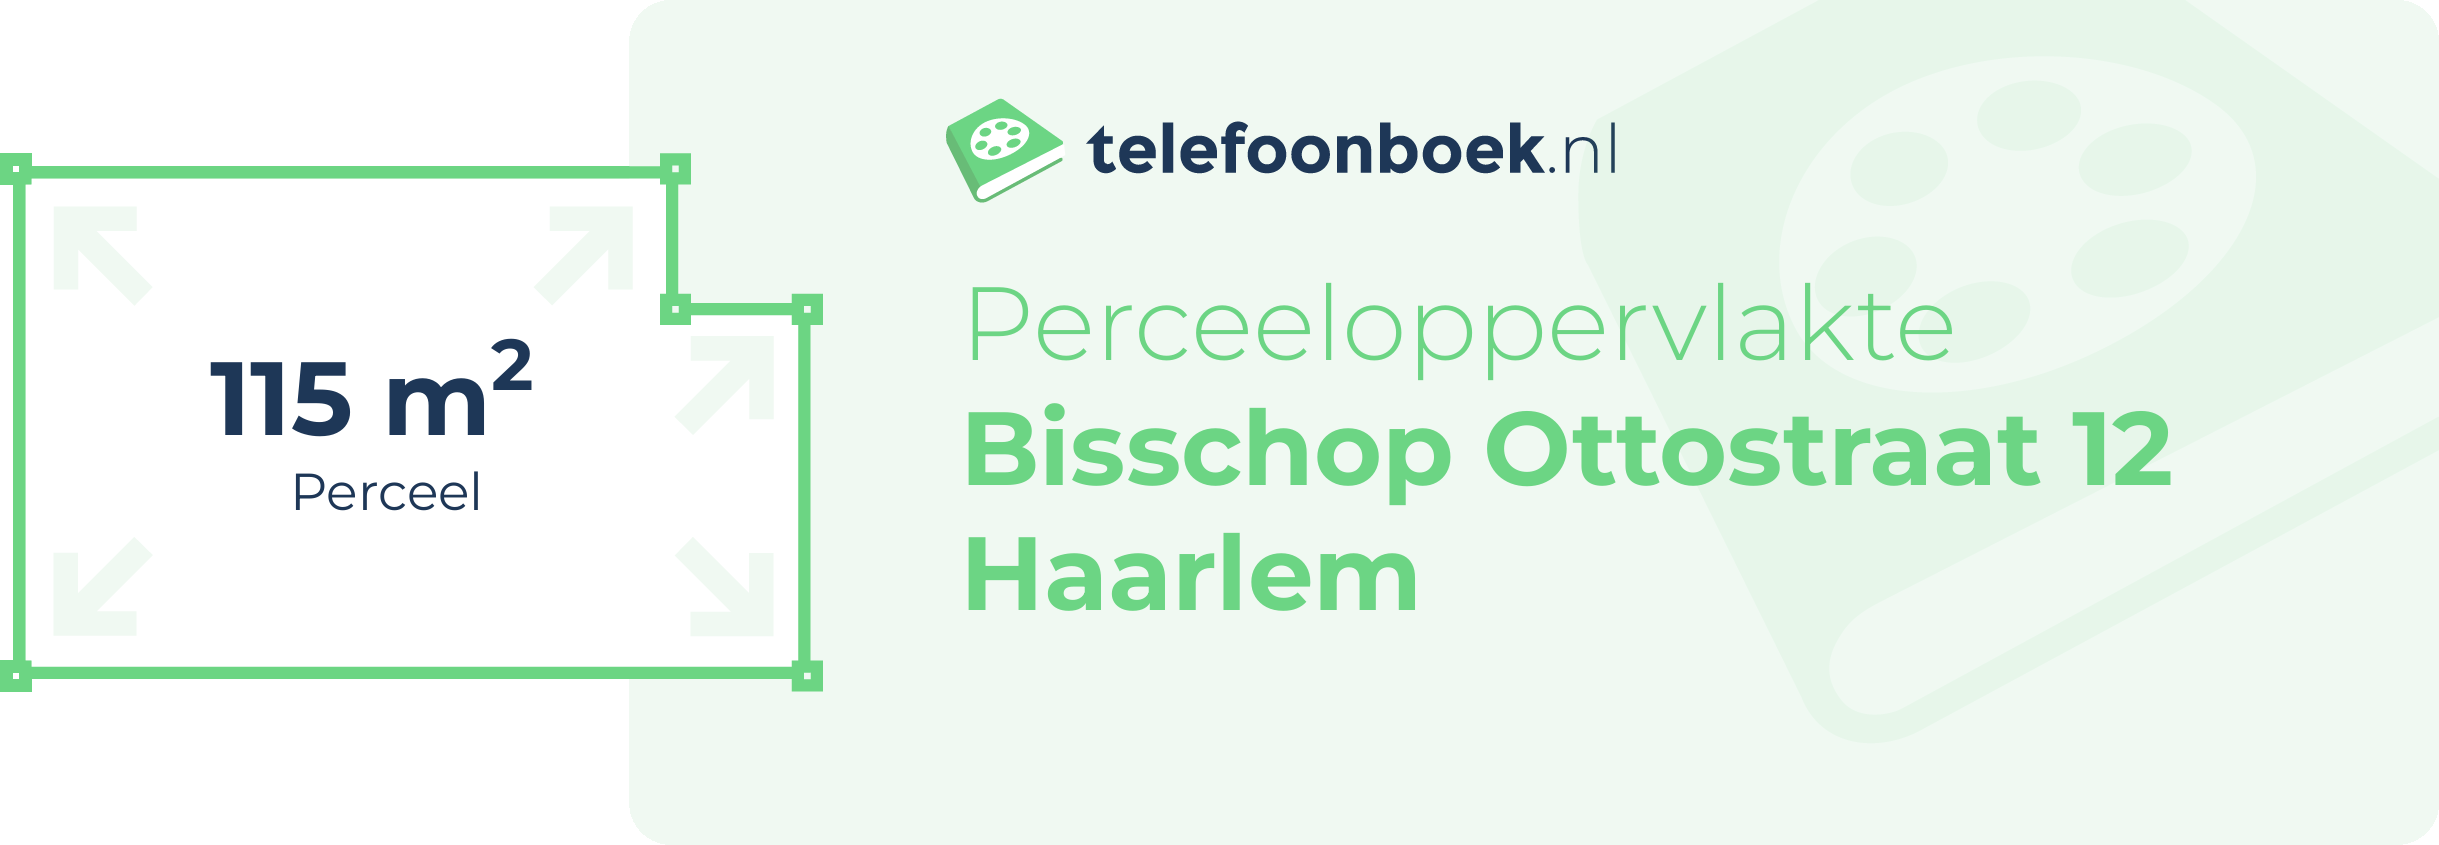 Perceeloppervlakte Bisschop Ottostraat 12 Haarlem